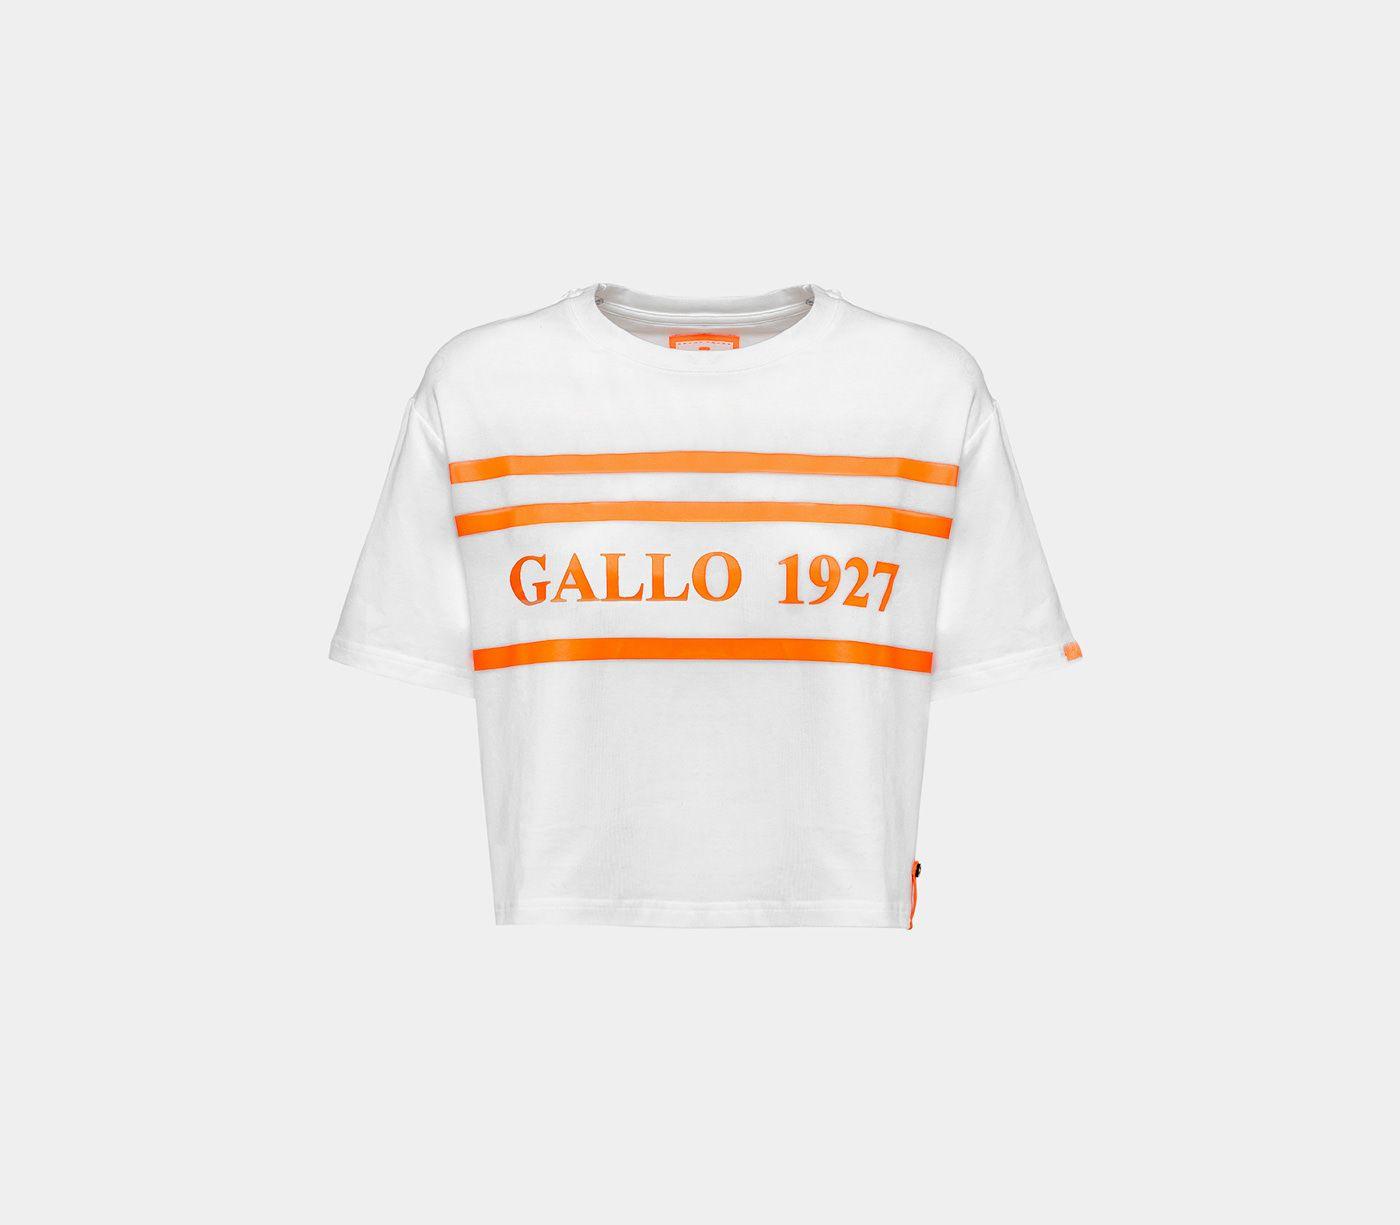 Gallo Logo - Gallo Online Shop WOMEN'S T SHIRT WITH GALLO 1927 LOGO AP508075 11624